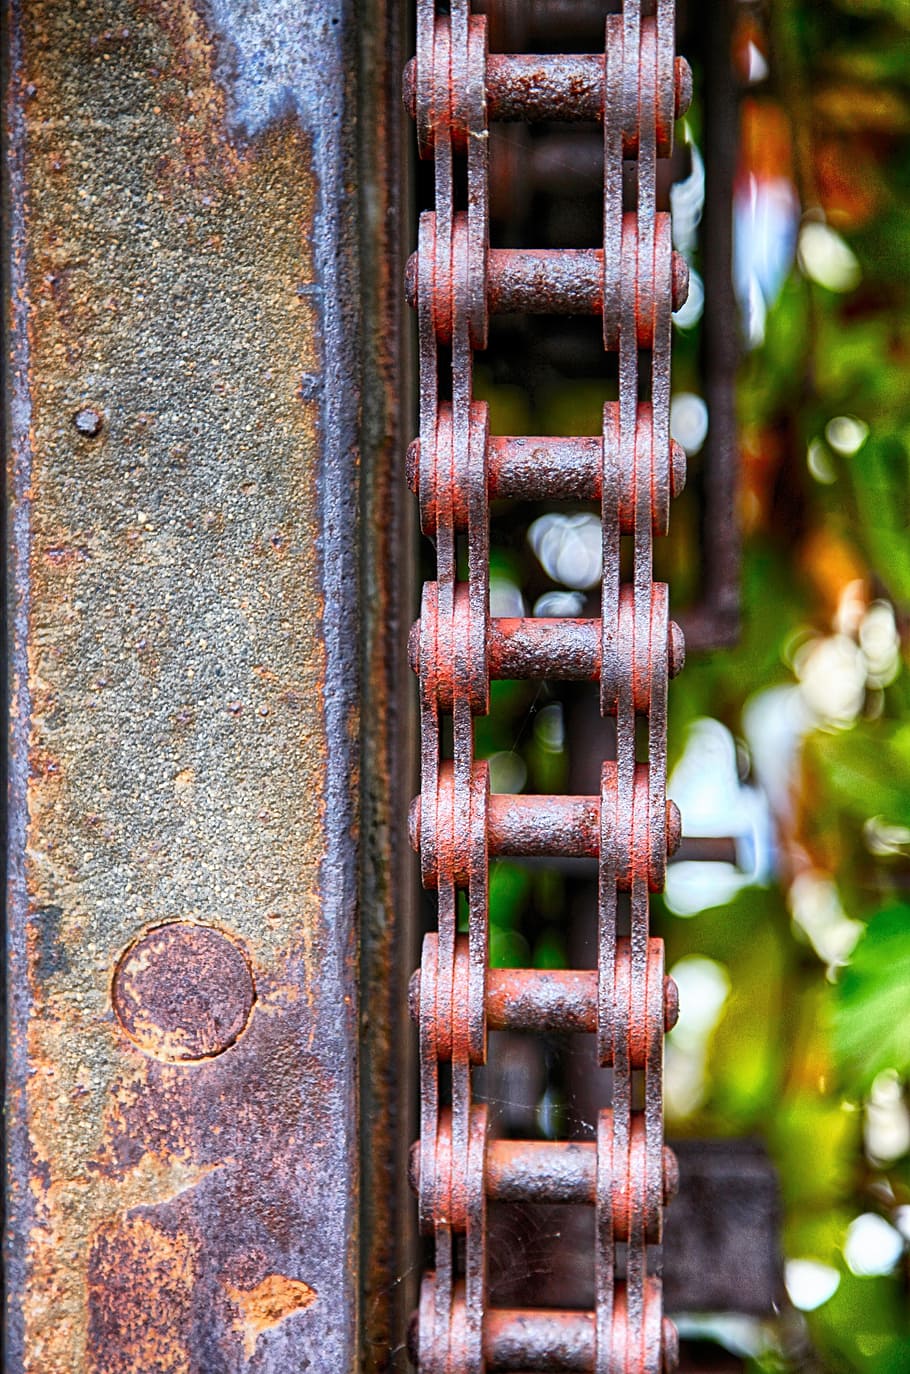 cadena, unidad, portón, aserradero, inoxidable, viejo, oxidado, hierro, metal, rueda